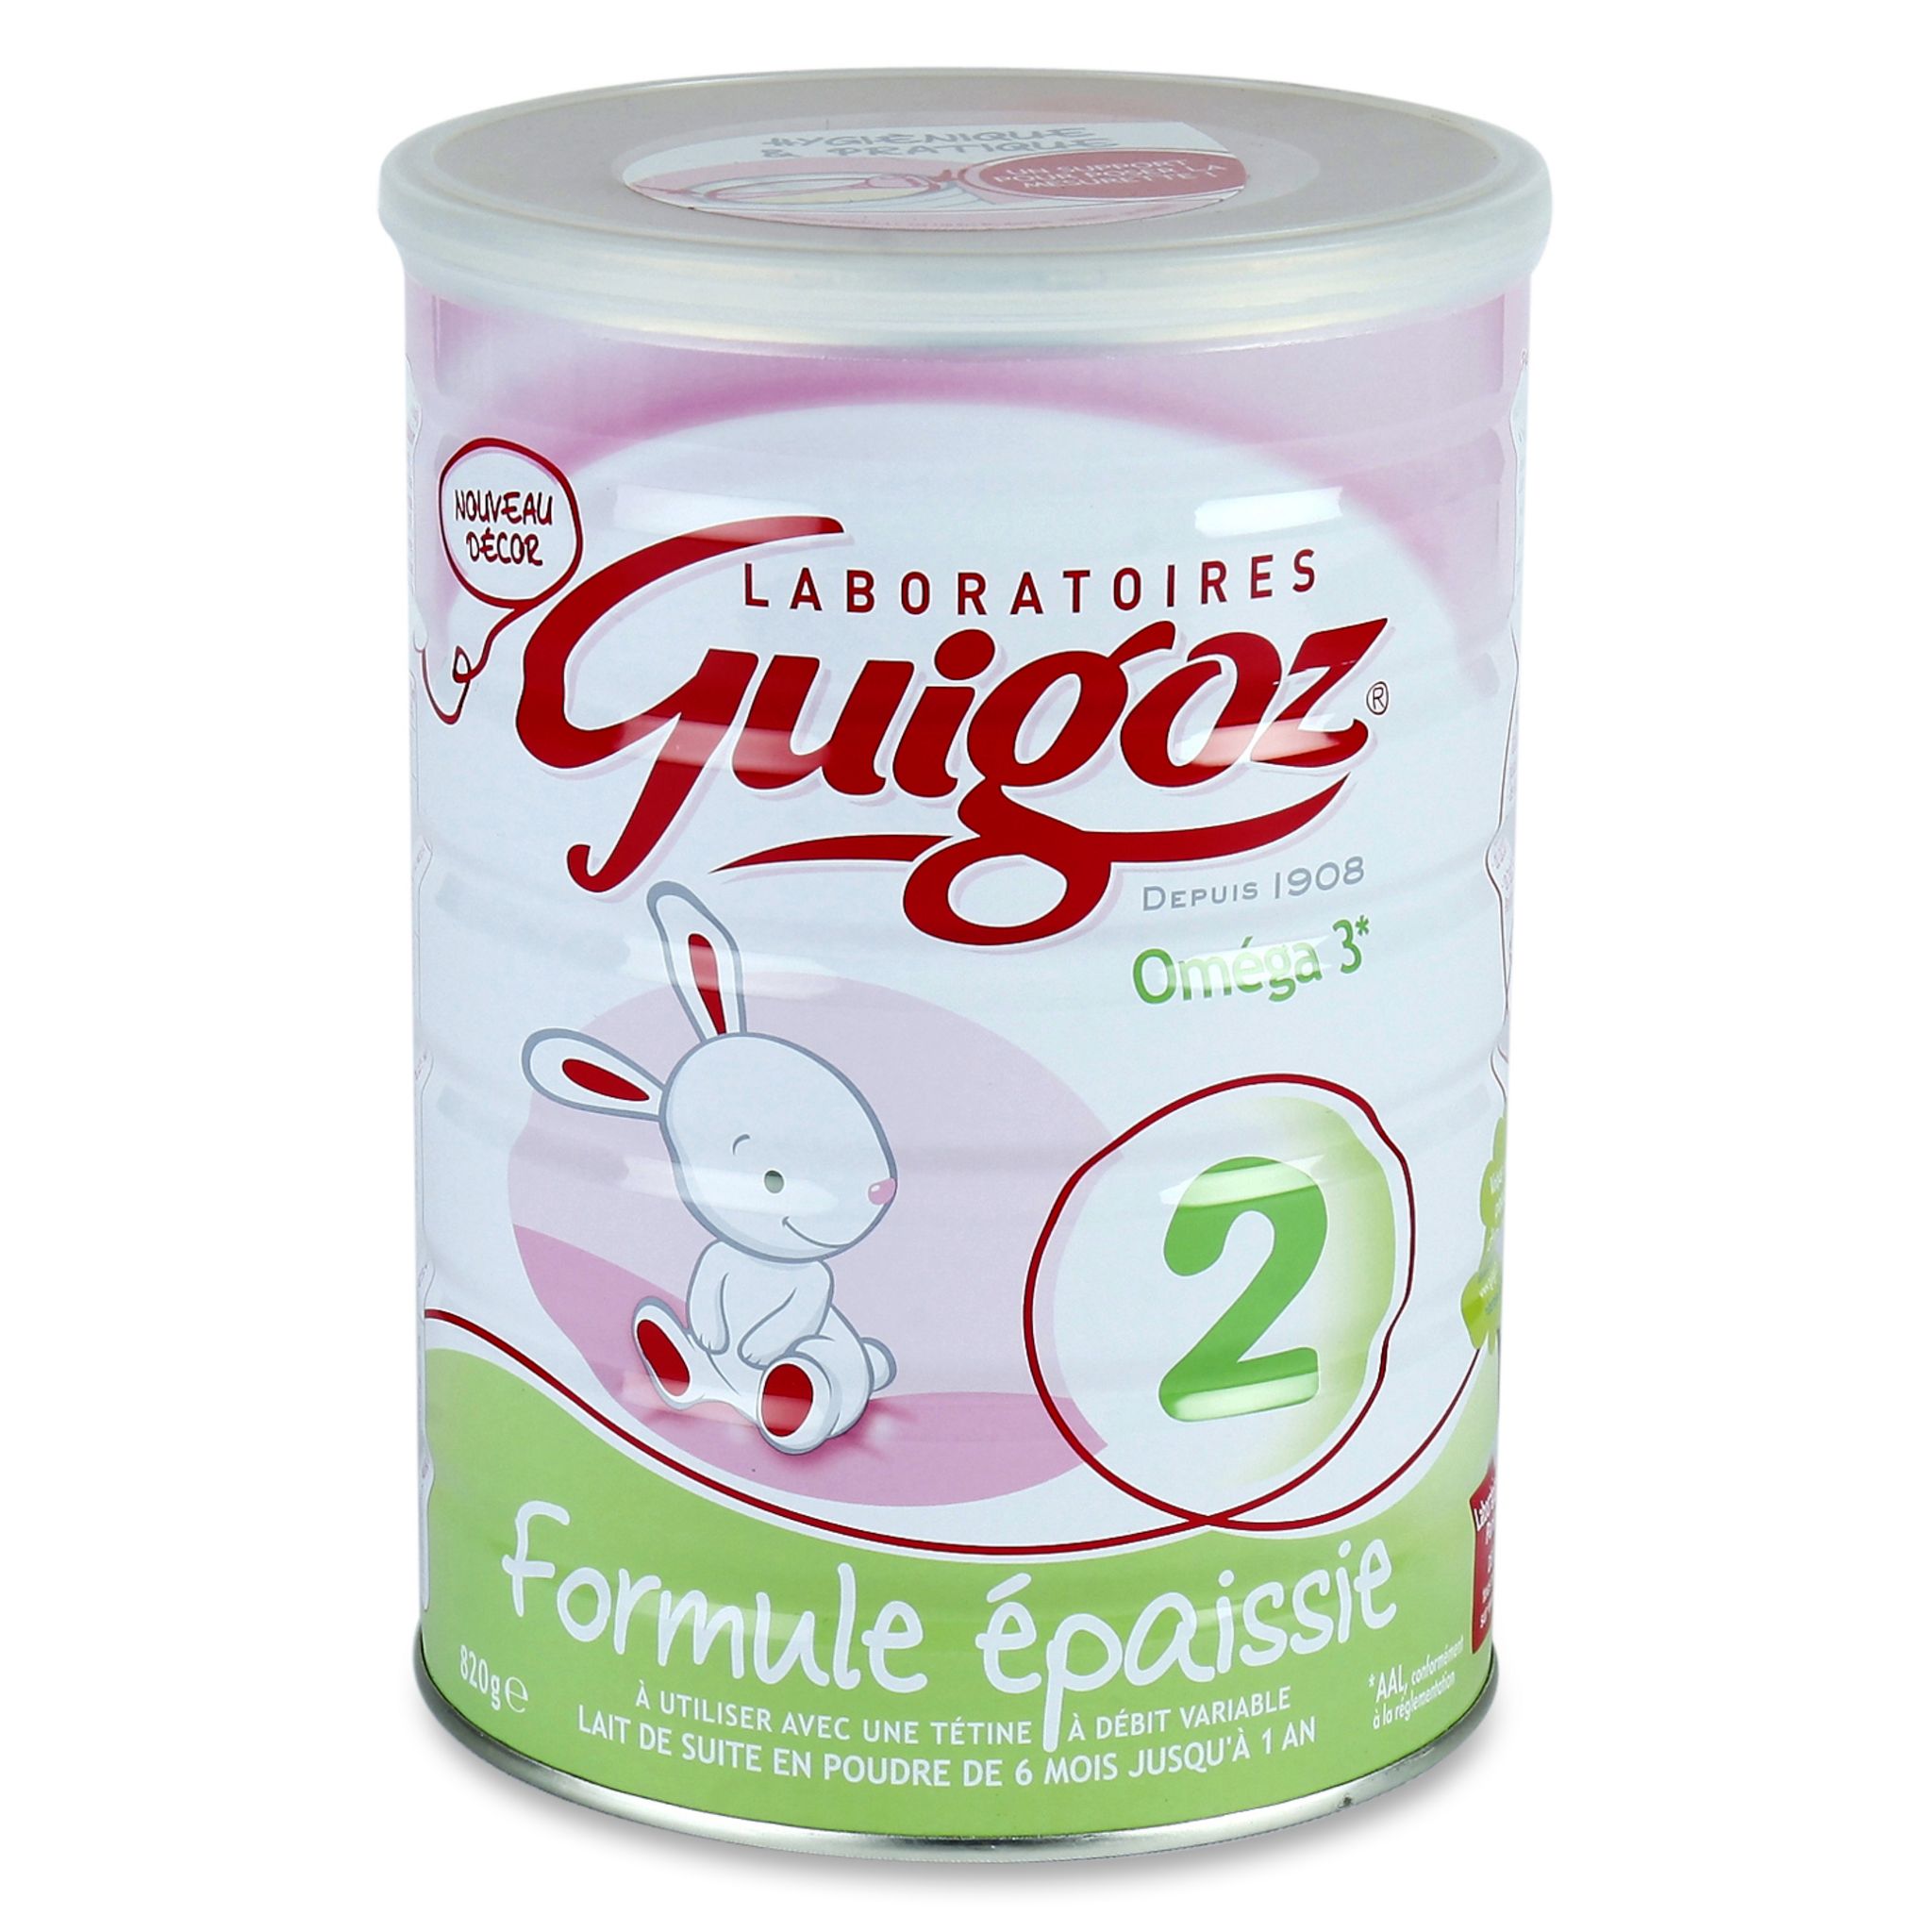 Du lait 1er âge Guigoz retiré de la vente - Elle